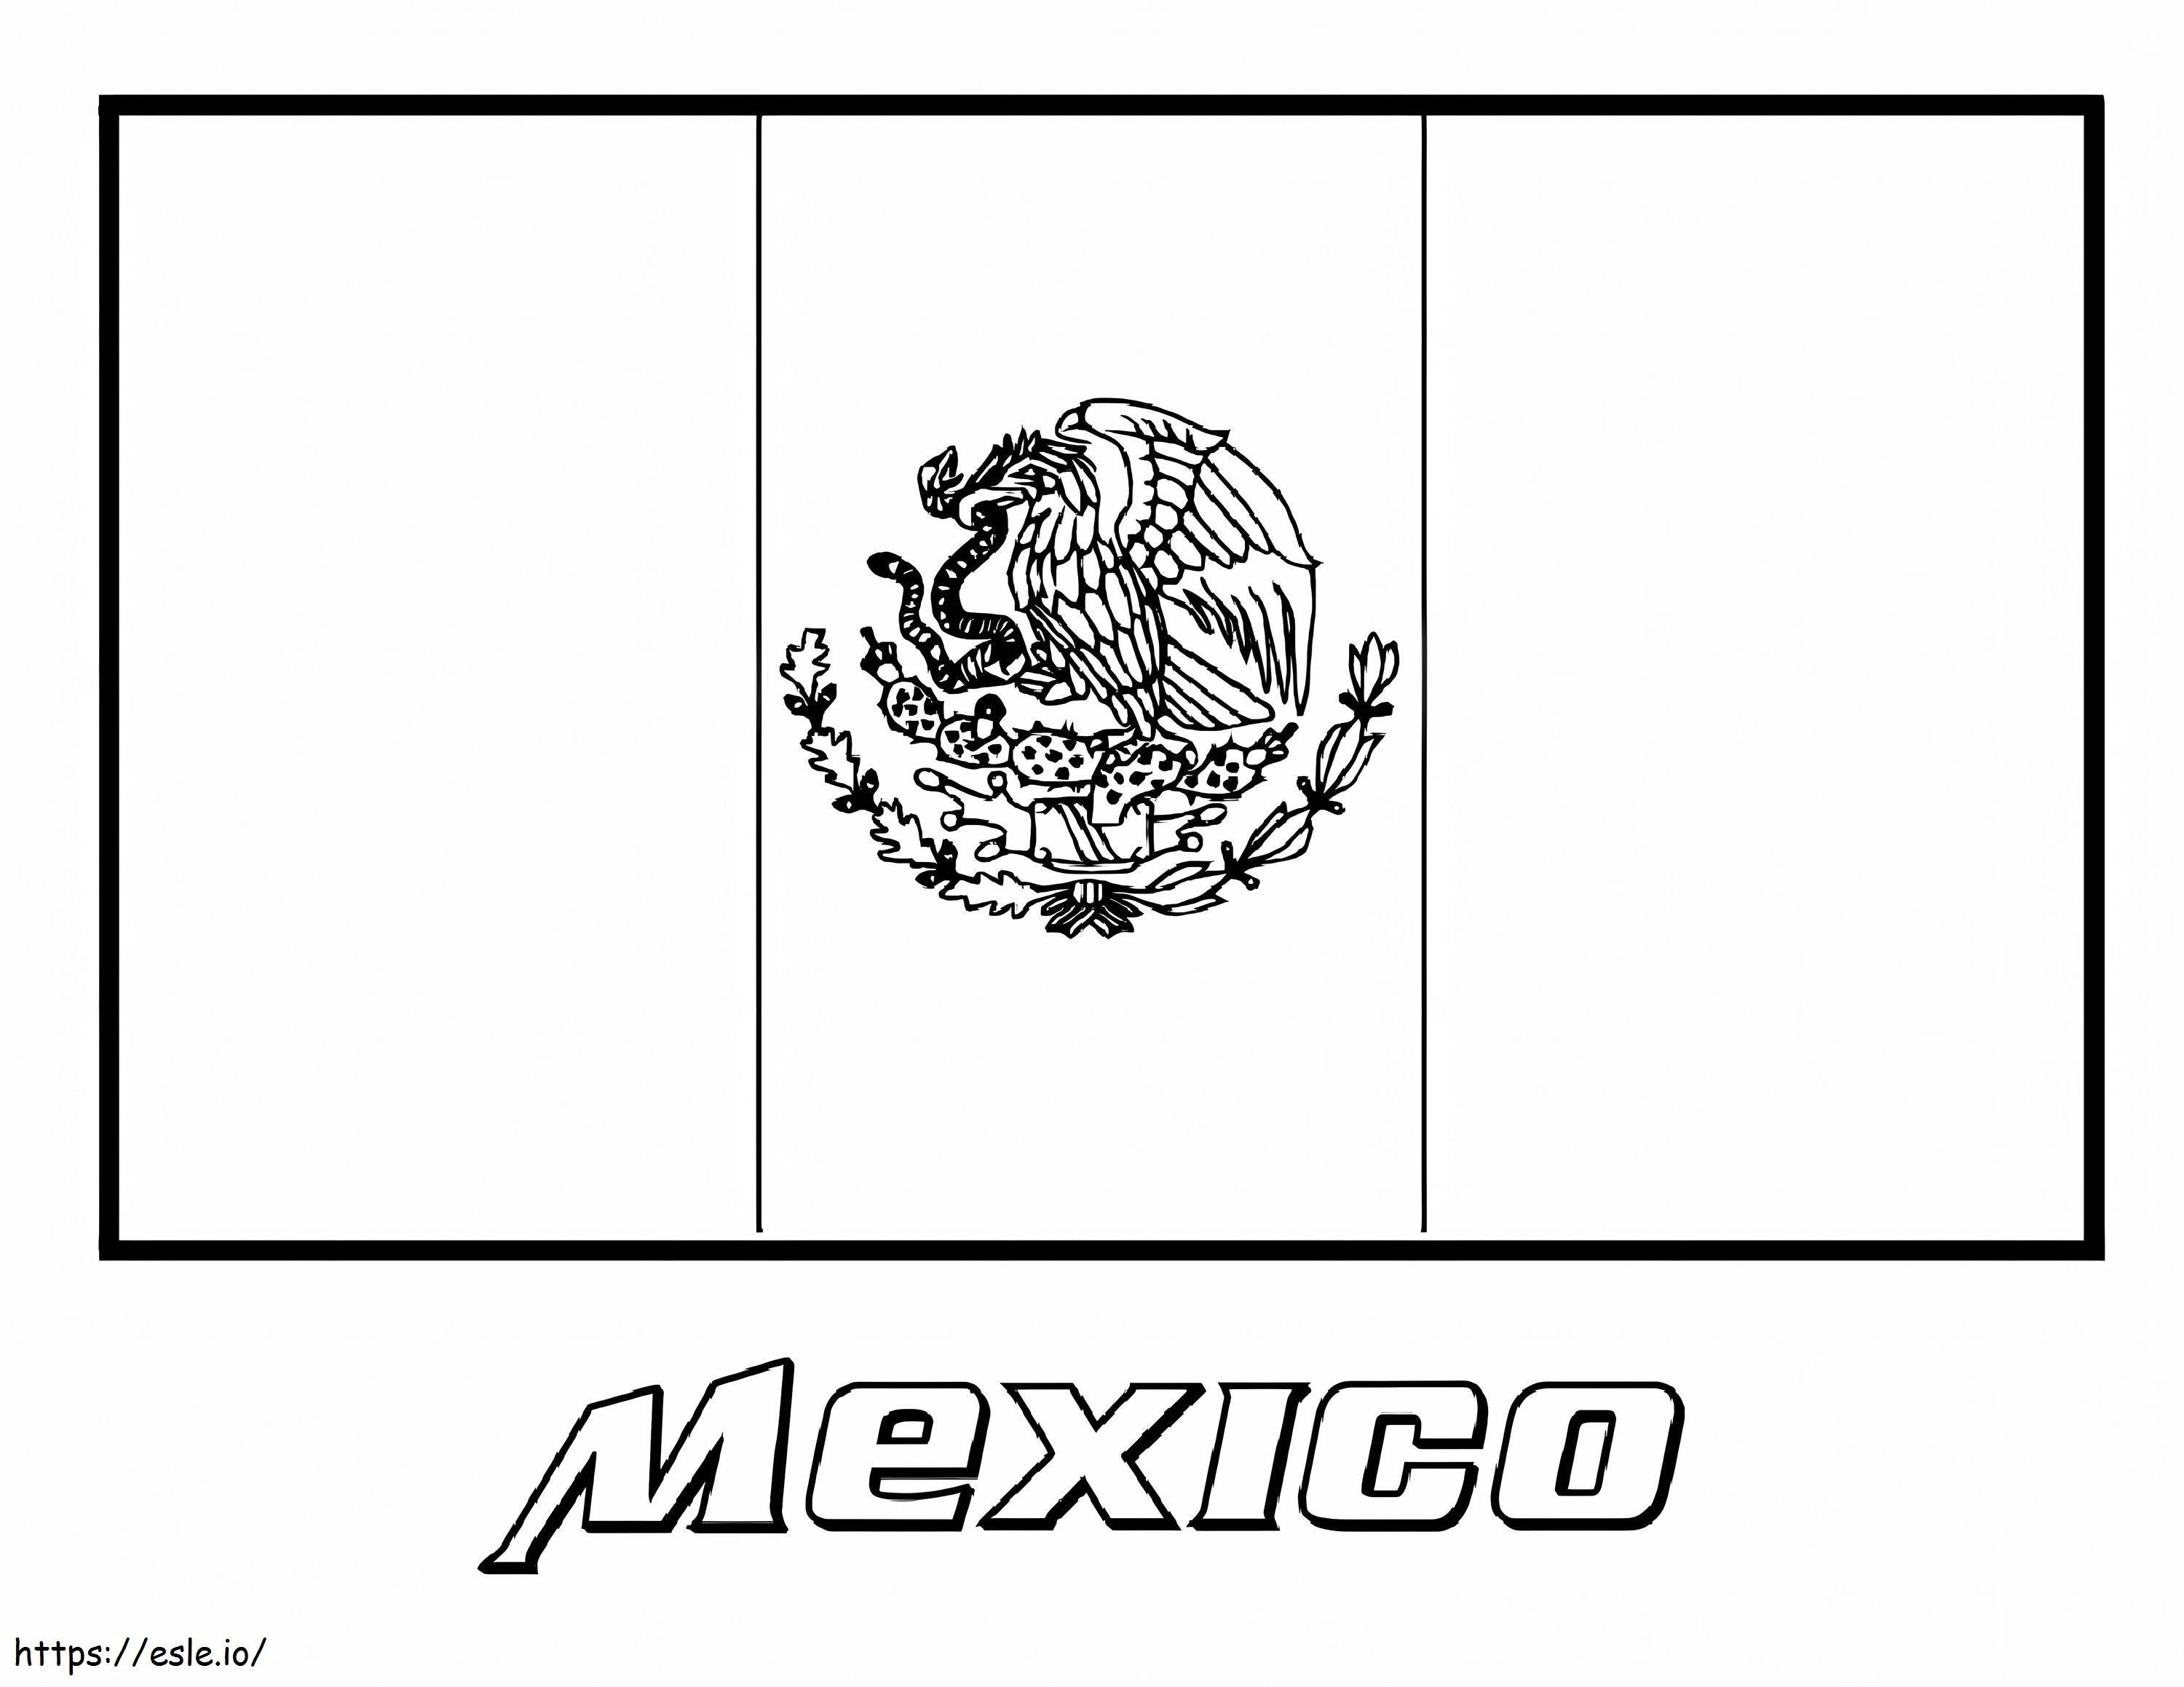 Bandiera del Messico da colorare